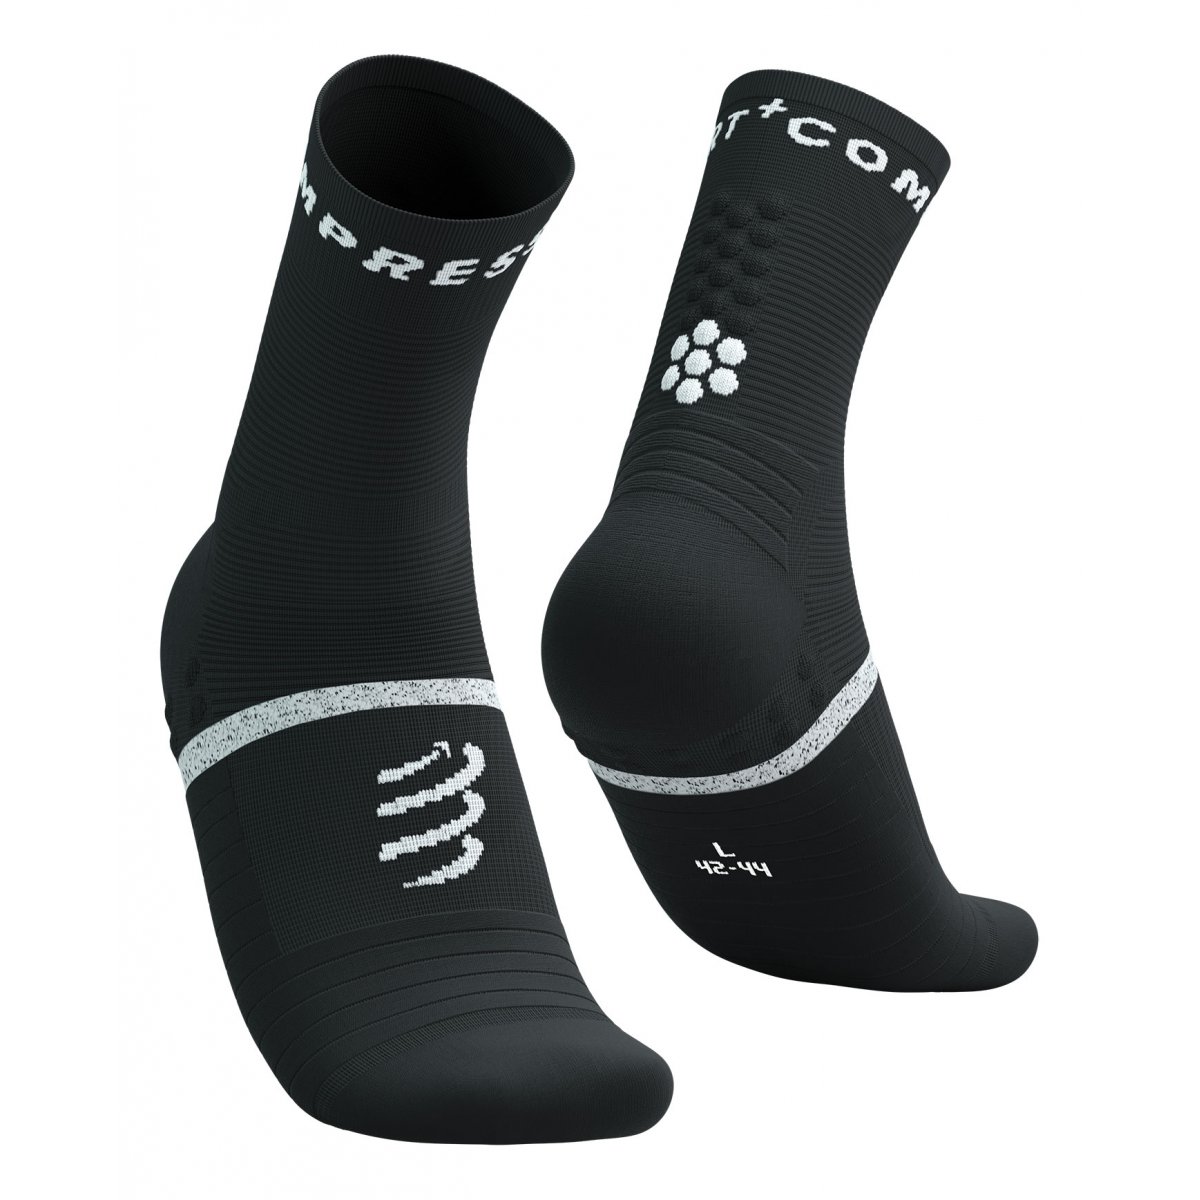 Pro Marathon Socks V2.0